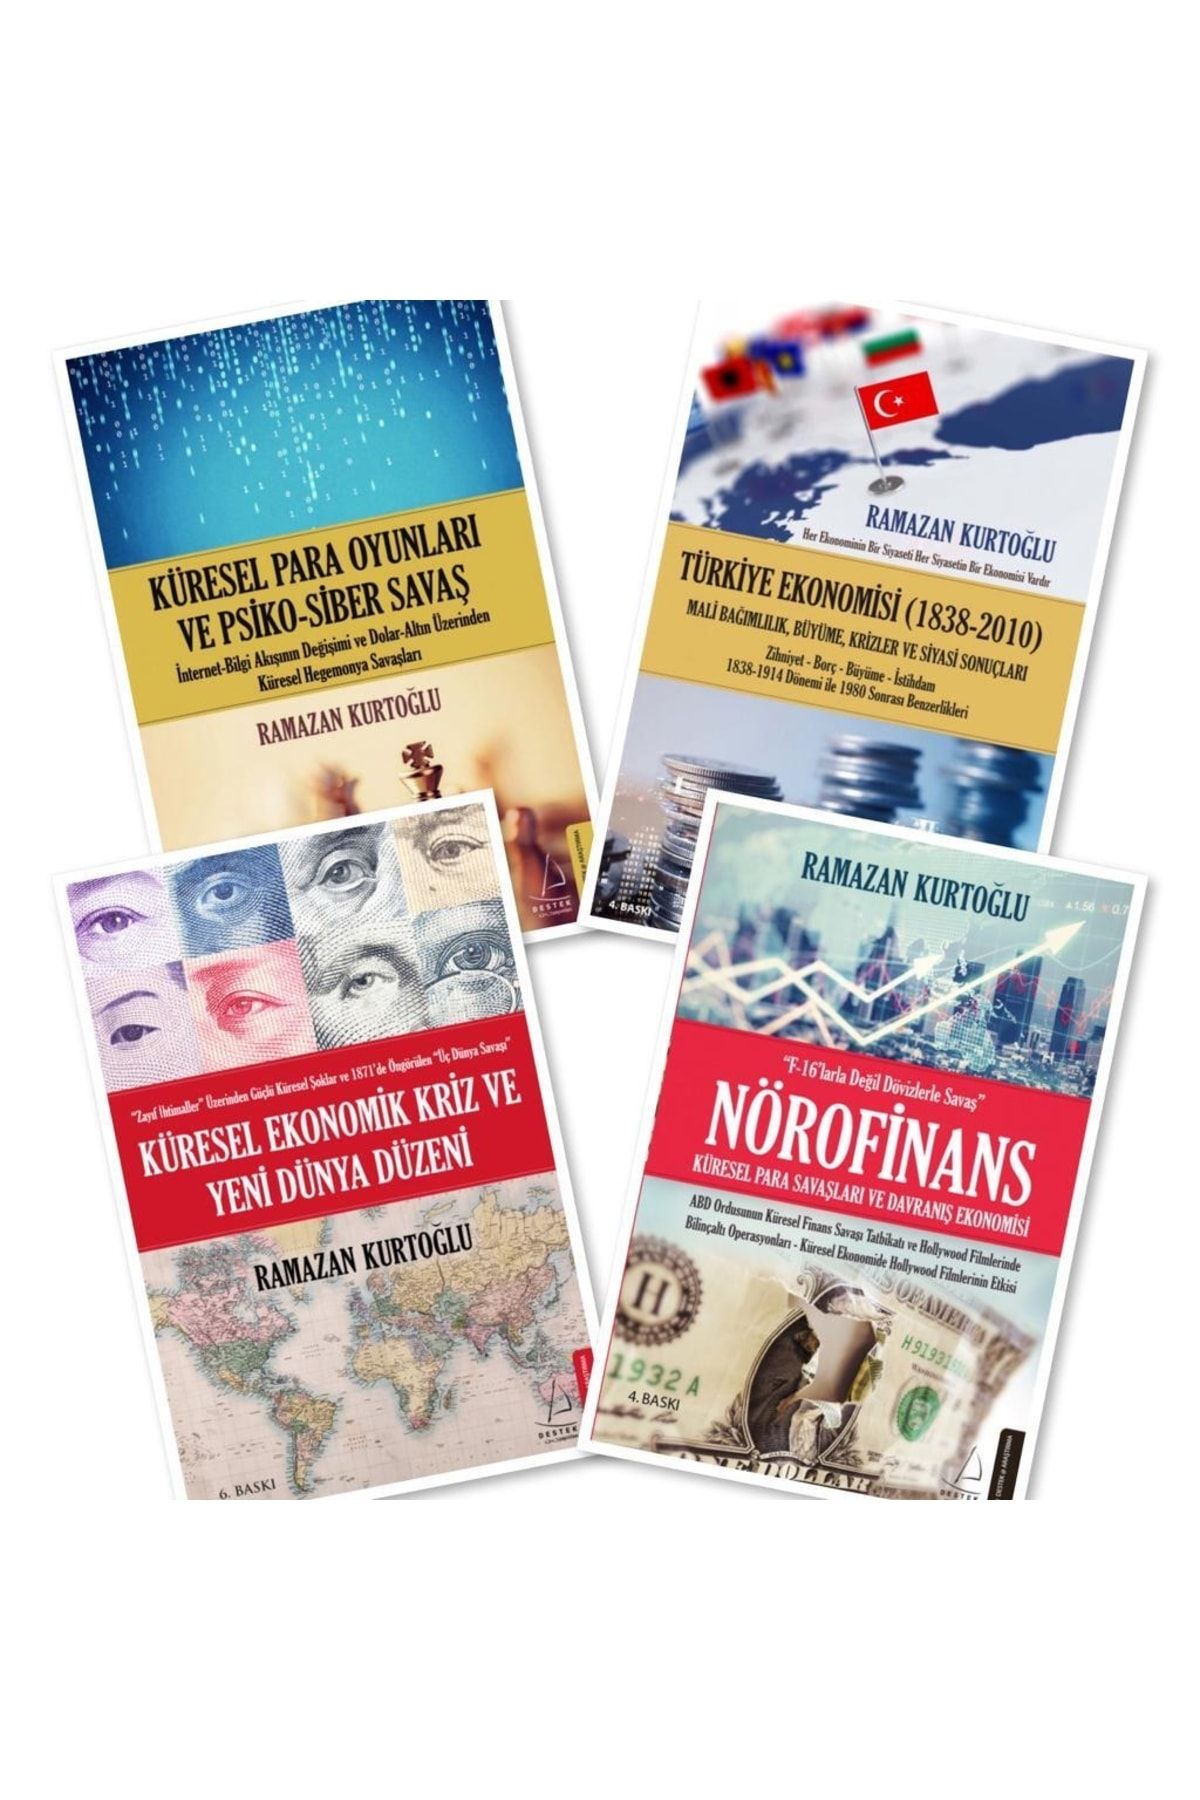 Destek Yayınları Küresel Para Oyunları - Türkiye Ekonomisi - Küresel Ekonomik Kriz - Nörofinans, Ramazan Kurtoğlu